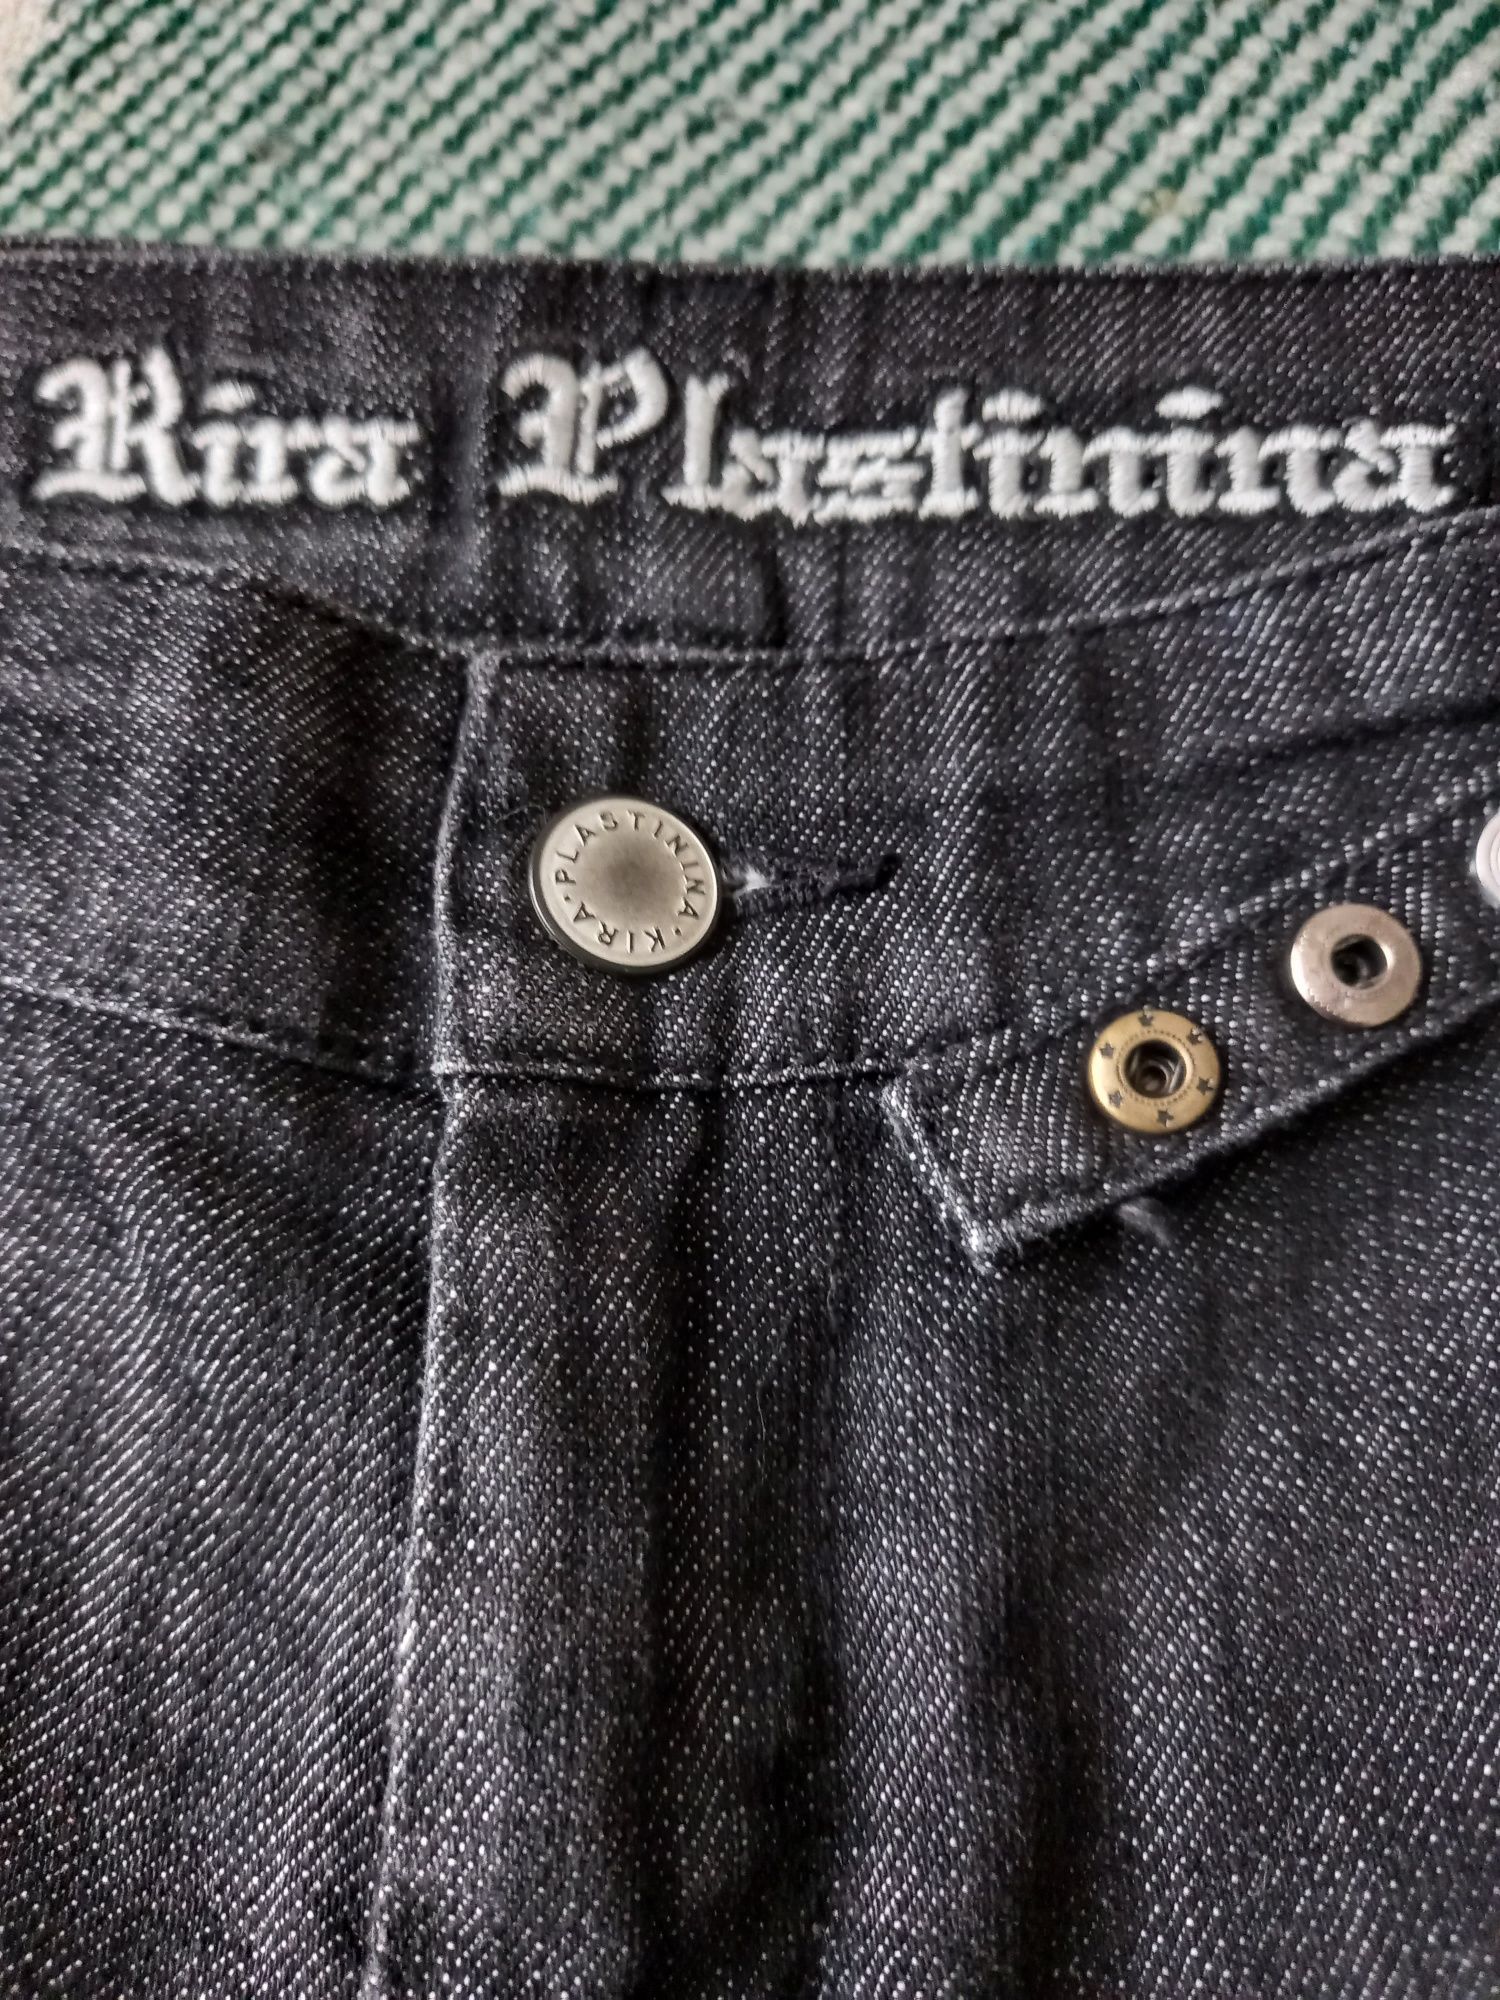 Бриджи kira platinina чорні джинси брюки капрі штаны кира пластинина